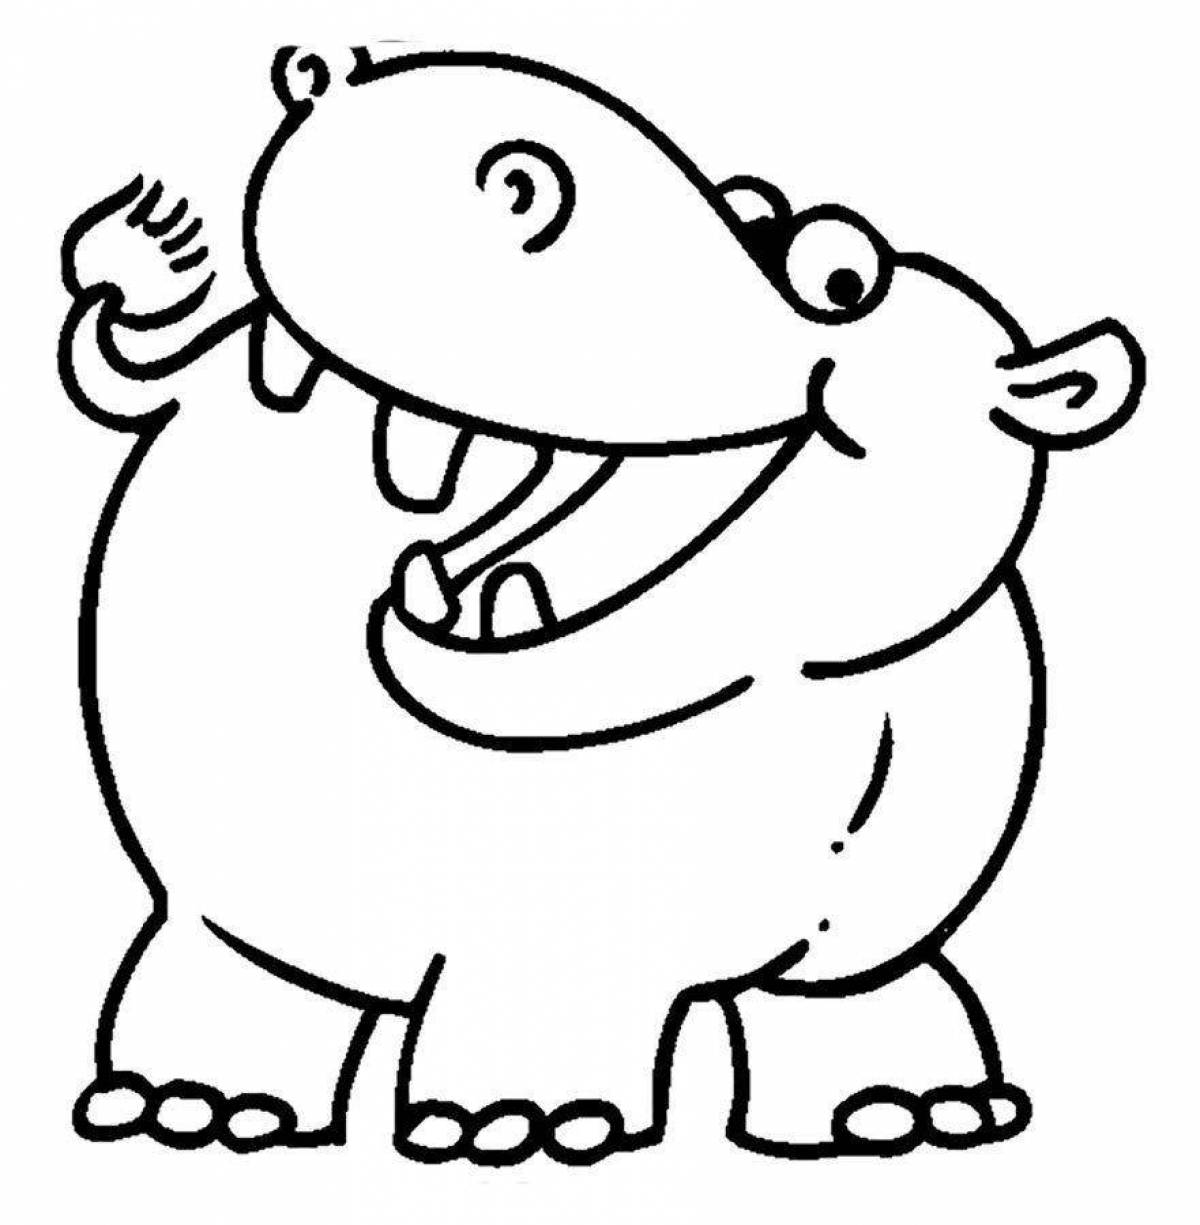 Coloring game hippopotamus for kids